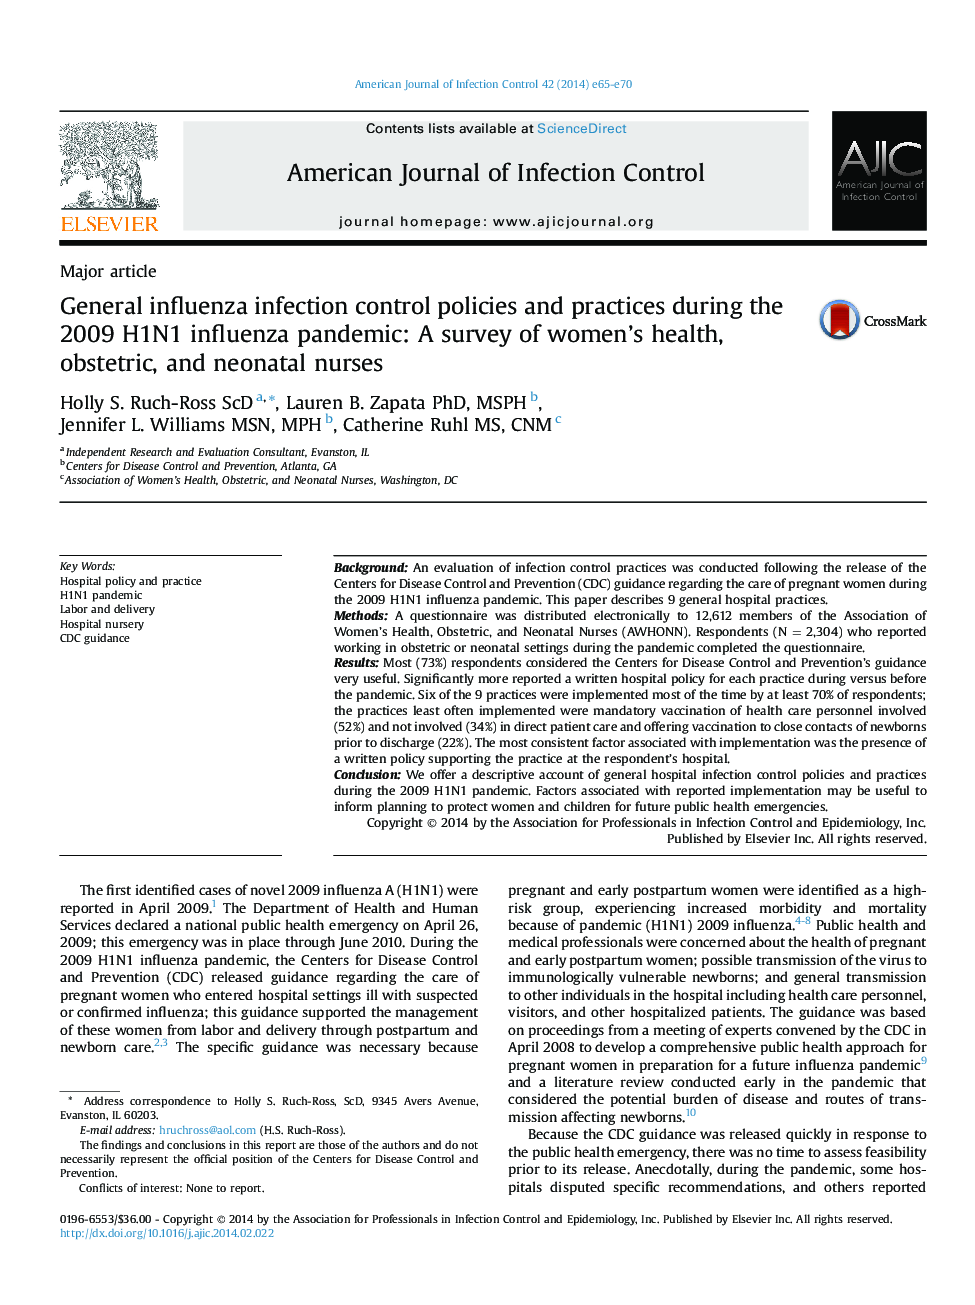 سیاست ها و شیوه های کنترل عفونت کلیوی در طول بیماری پاندمی 2009 H1N1: نظرسنجی از پرستاران بهداشت، زنان و نوزادان